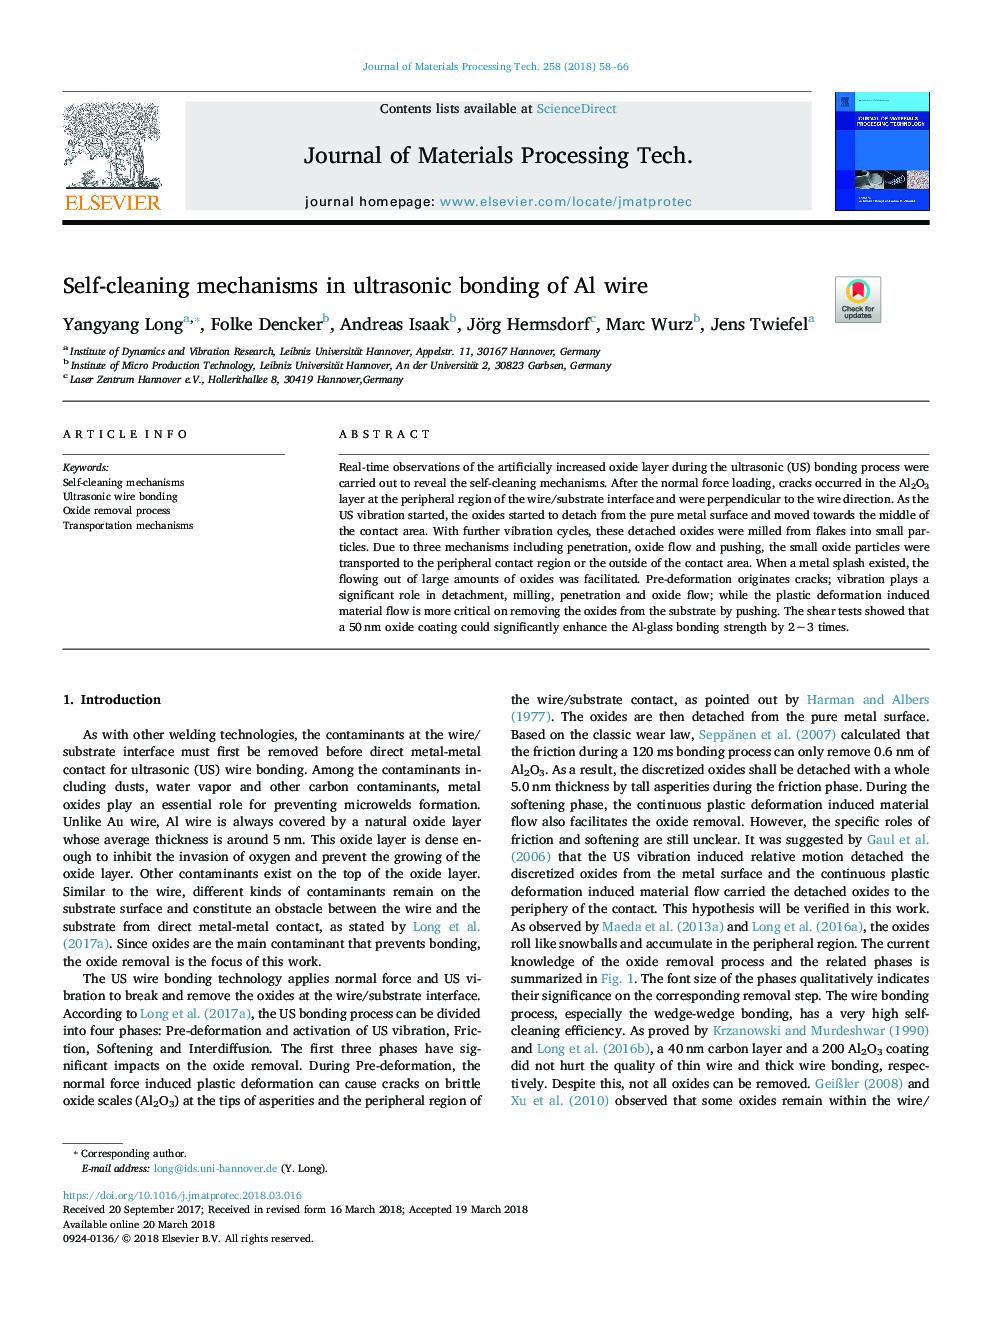 Self-cleaning mechanisms in ultrasonic bonding of Al wire